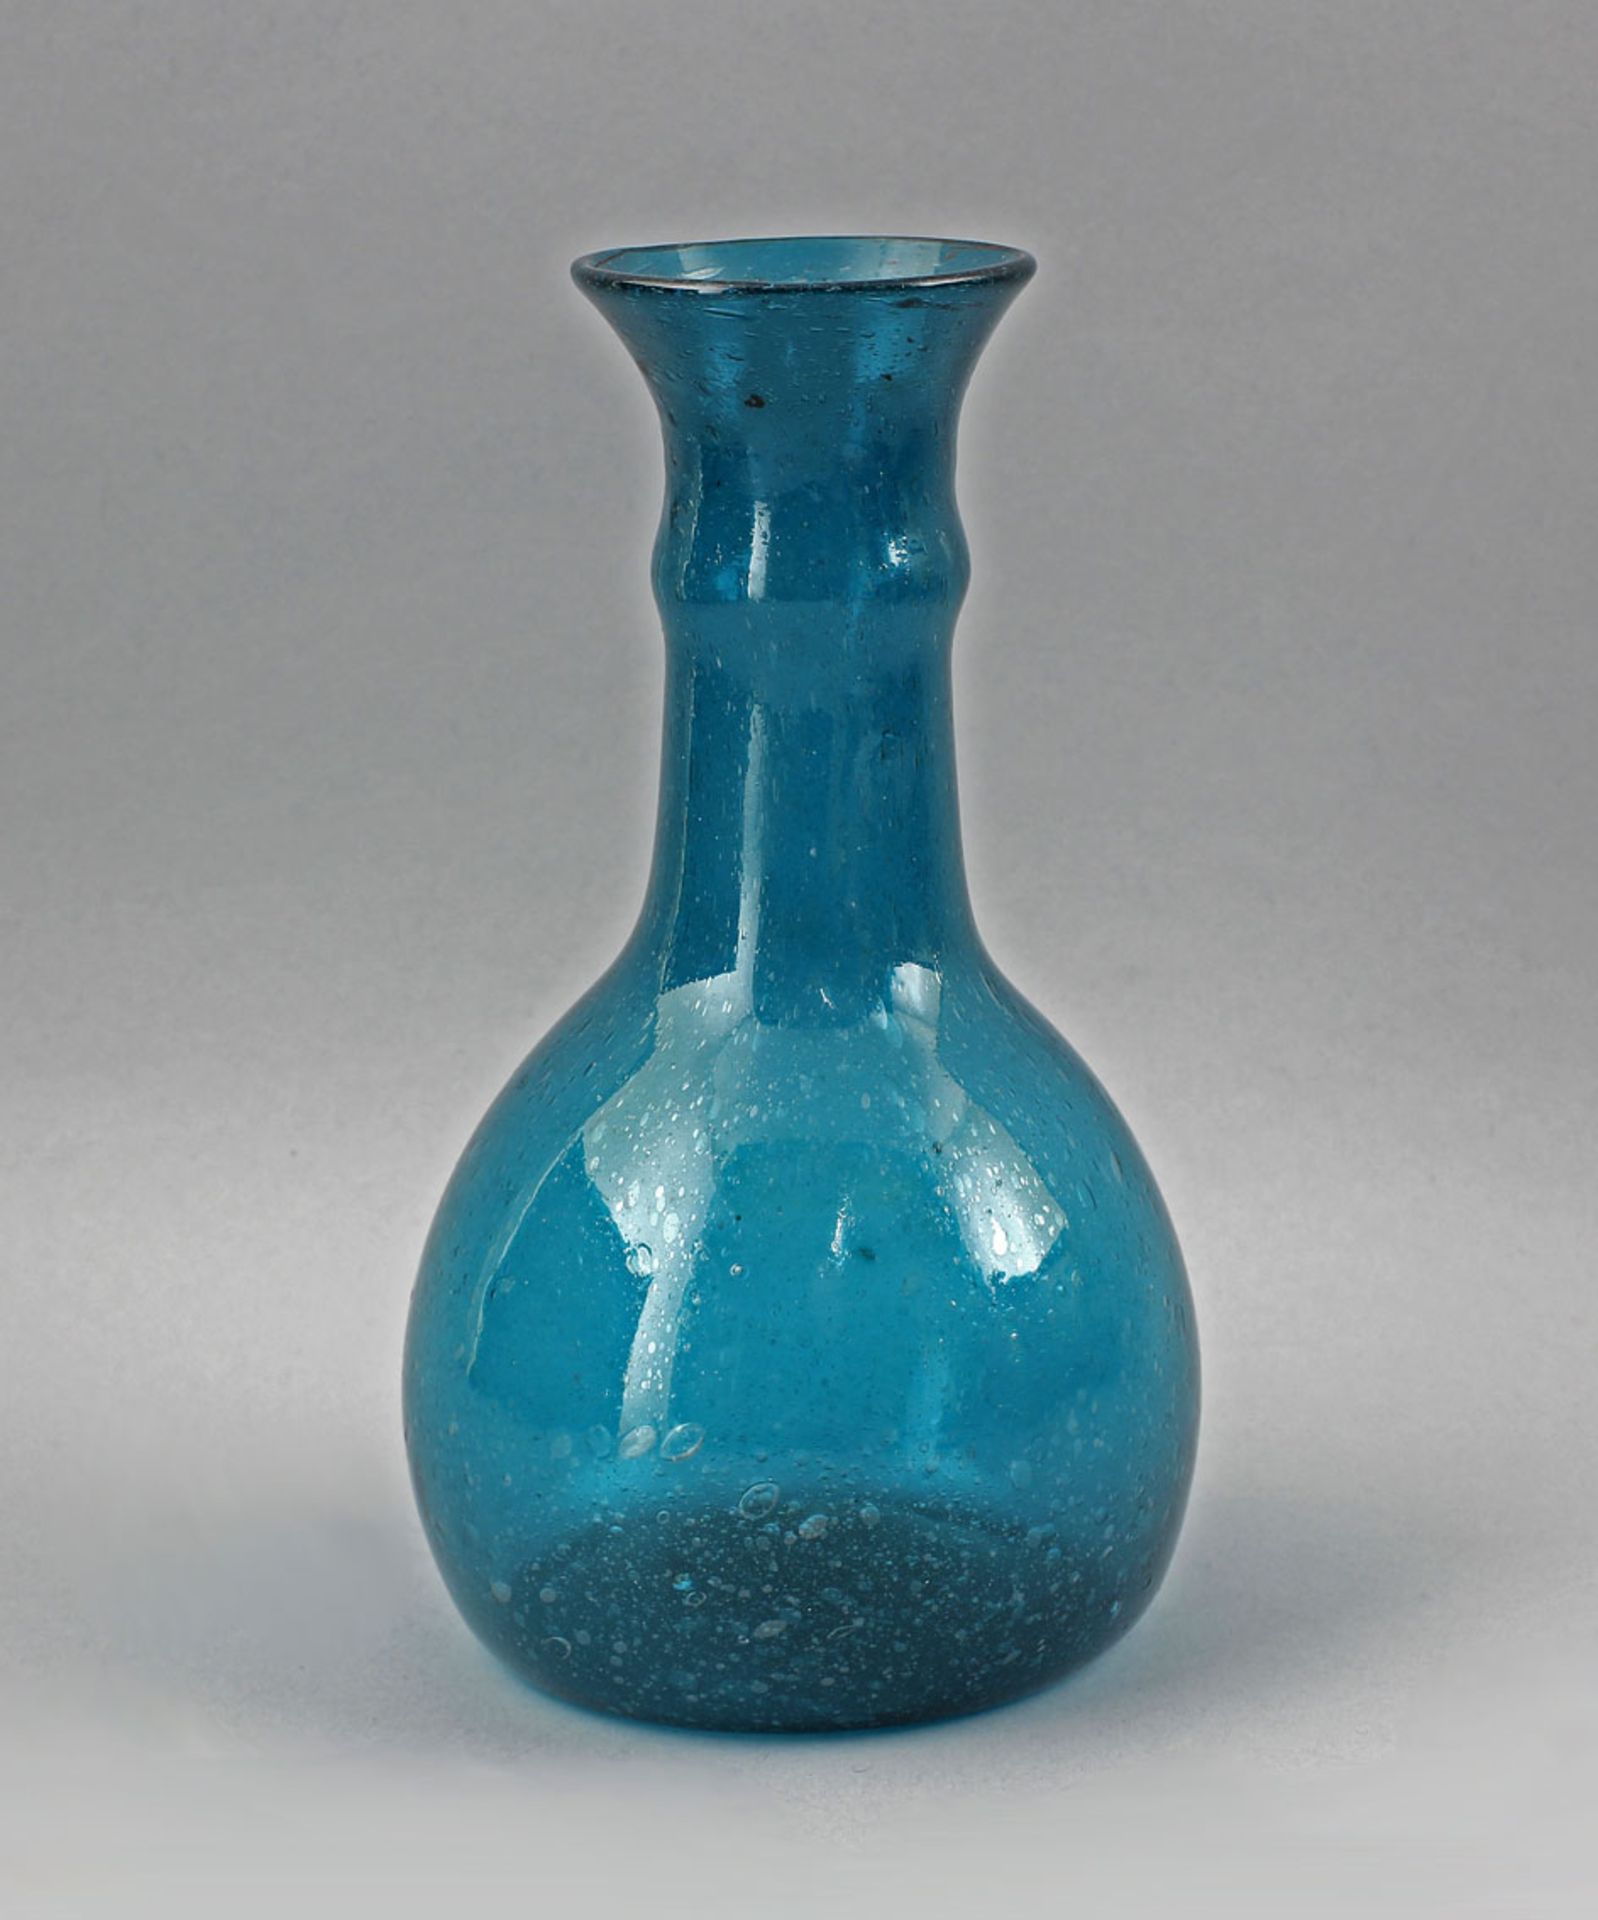 Türkisfarbene Vase Luftblaseneinschlüsse19. Jh., blaues Glas mit zahlreichen Luftblasen-